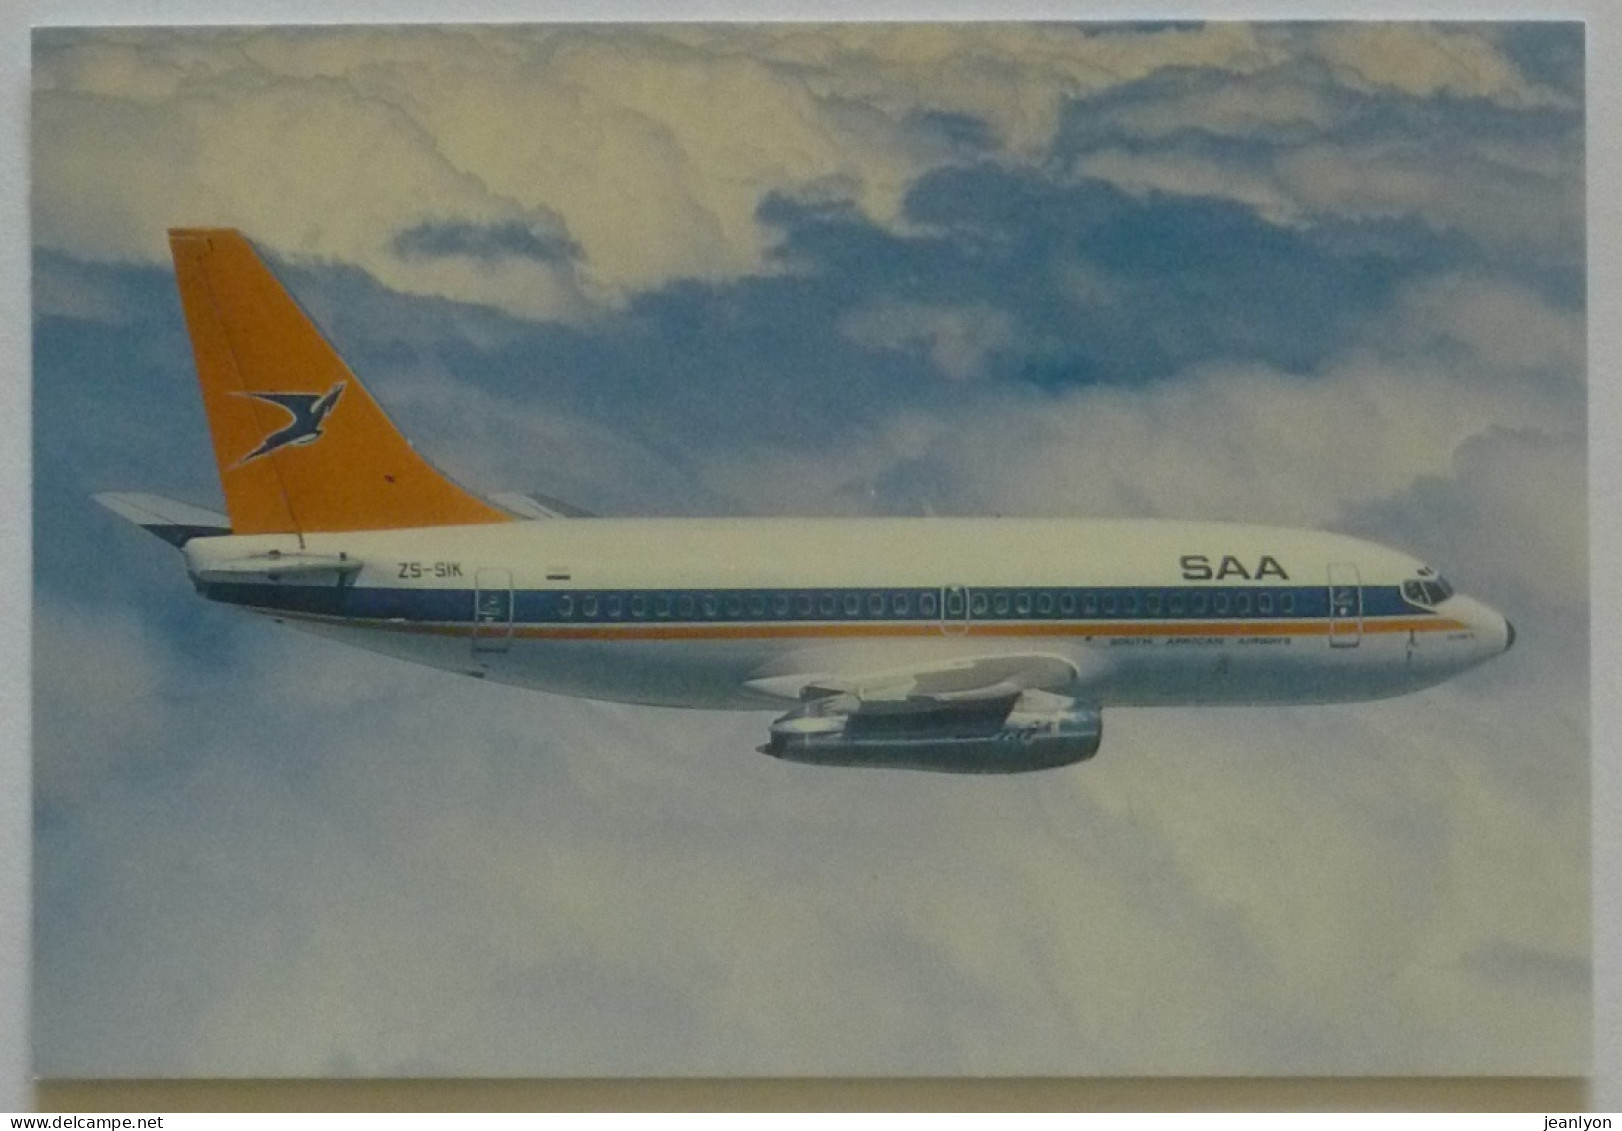 AVION BOEING 737 - SAA SAL / South African Airways - Sud Afrikaanse Lugdiens - Avion En Vol Dans Le Ciel - 1946-....: Moderne